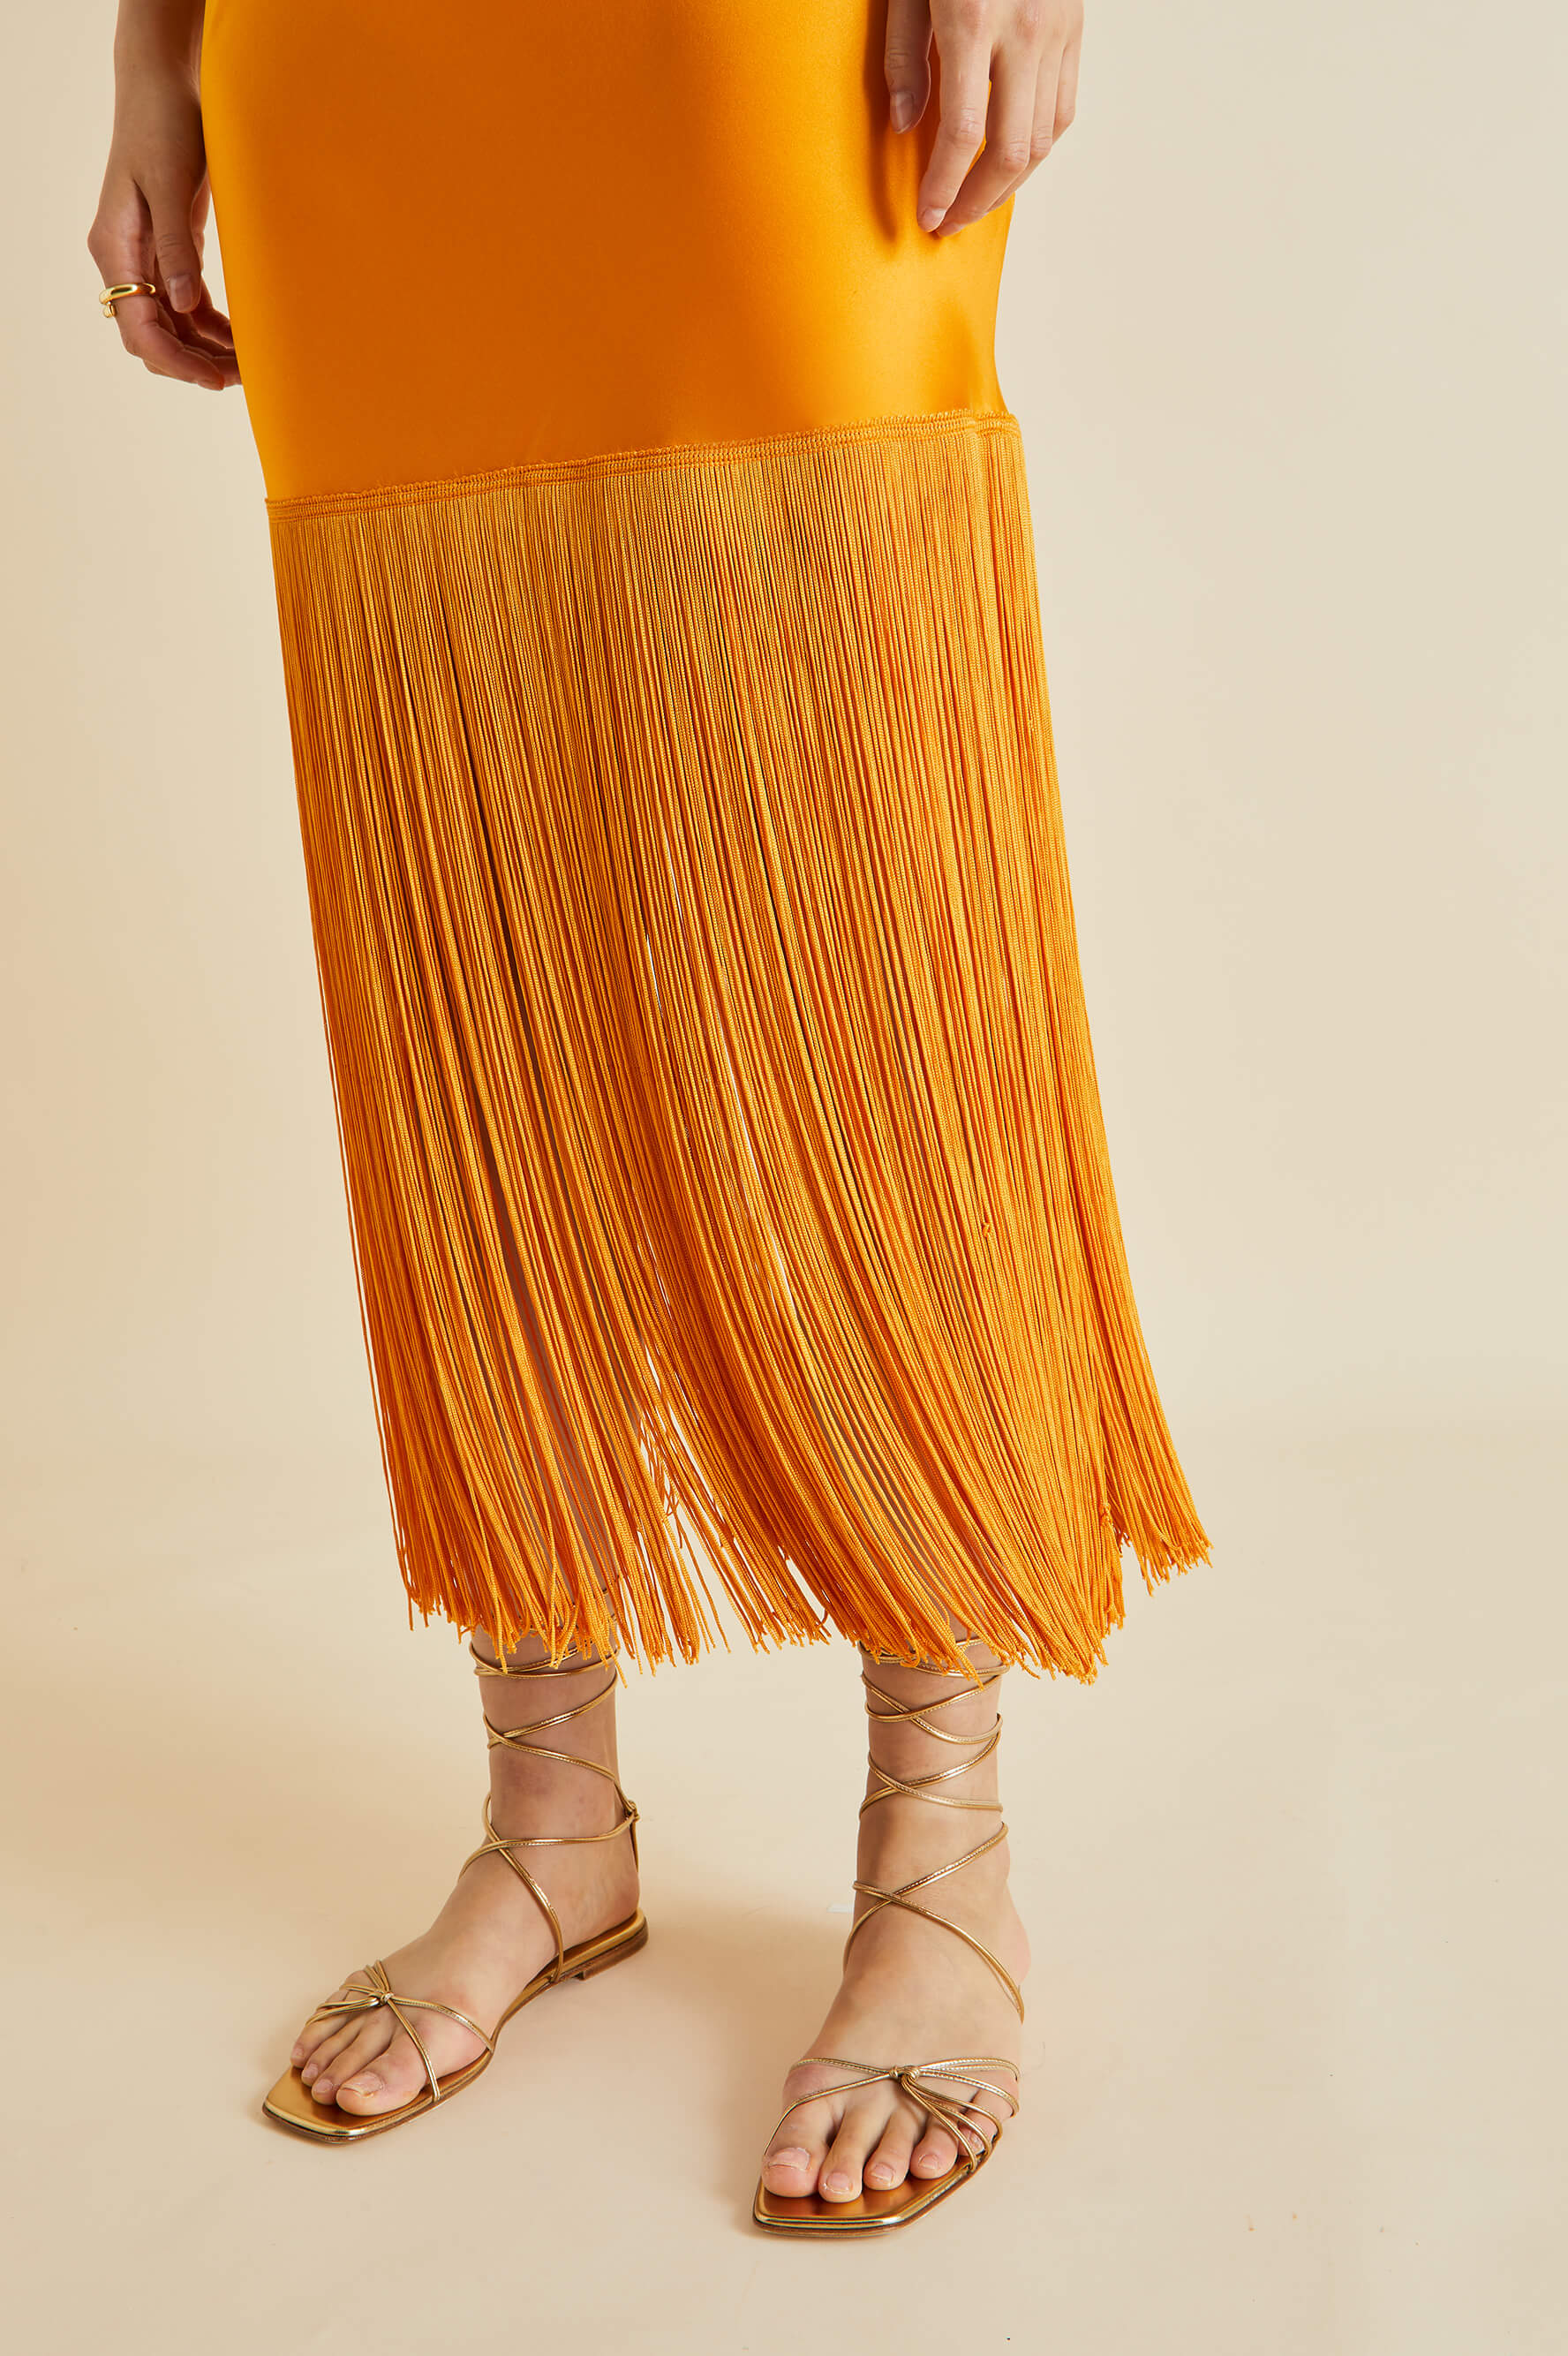 Zoya Orange Fringed Silk Satin Slip Dress